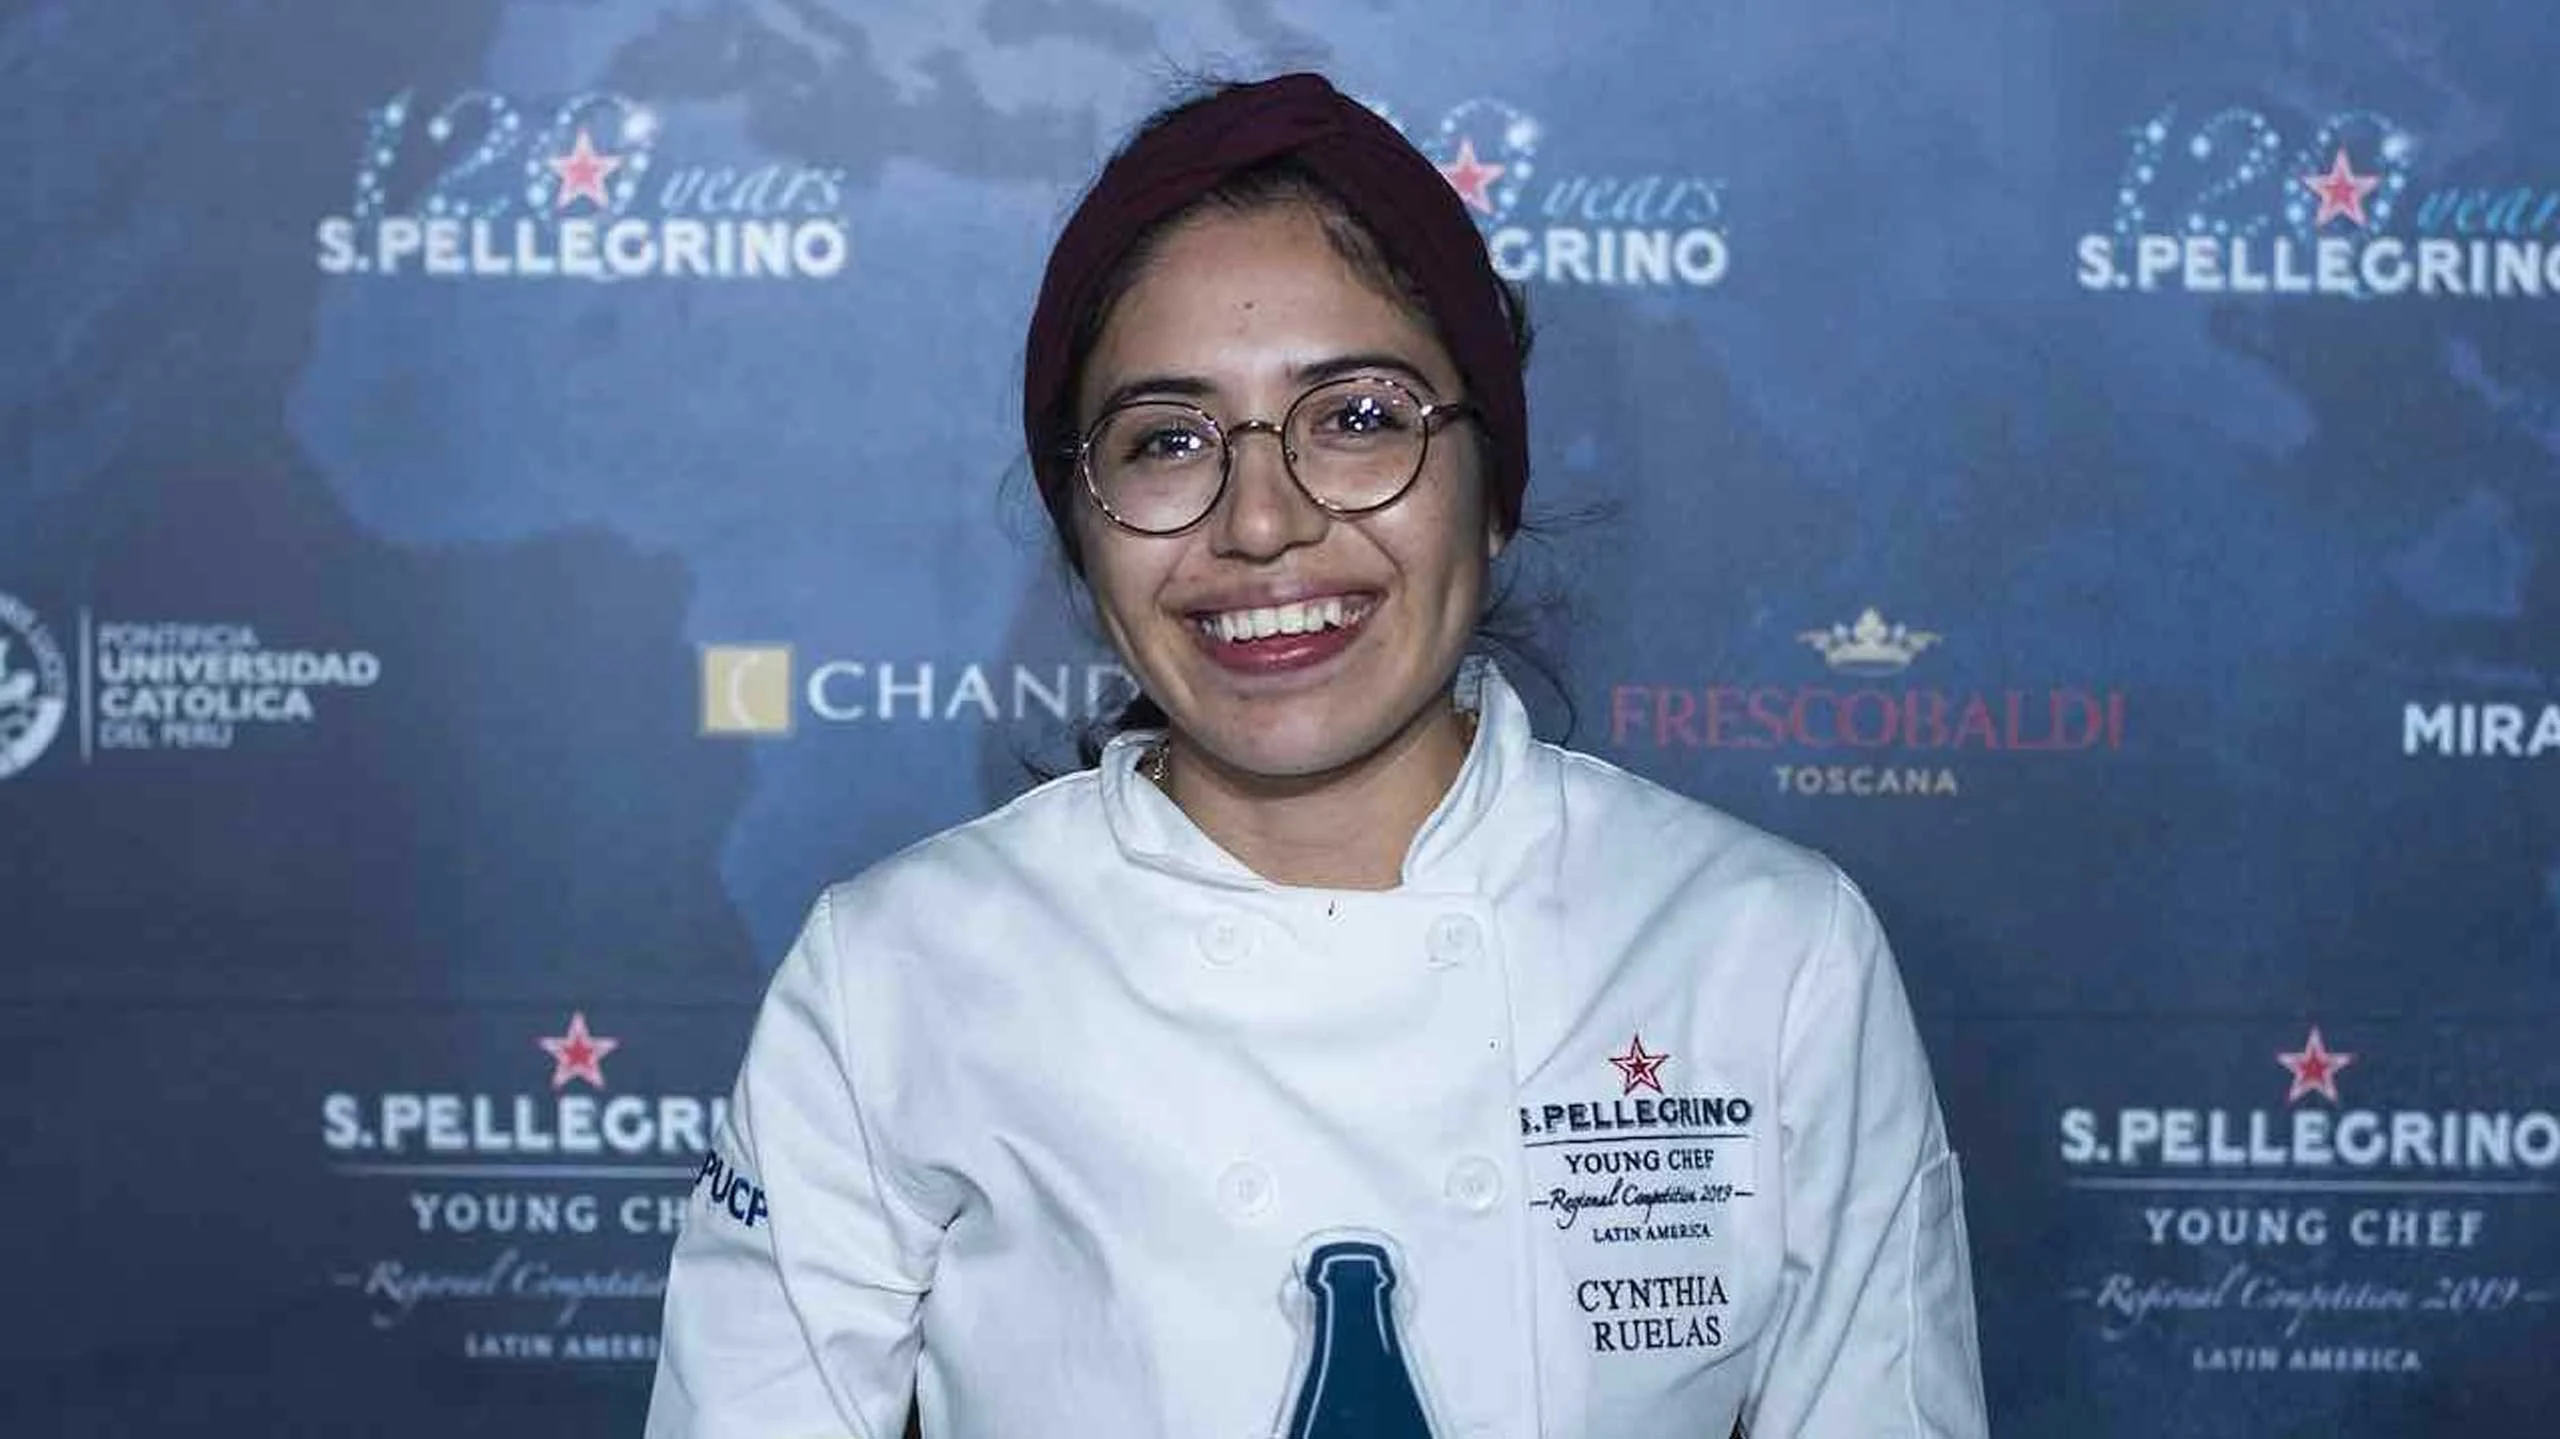 México representará a LATAM en la final de S. Pellegrino Young Chef